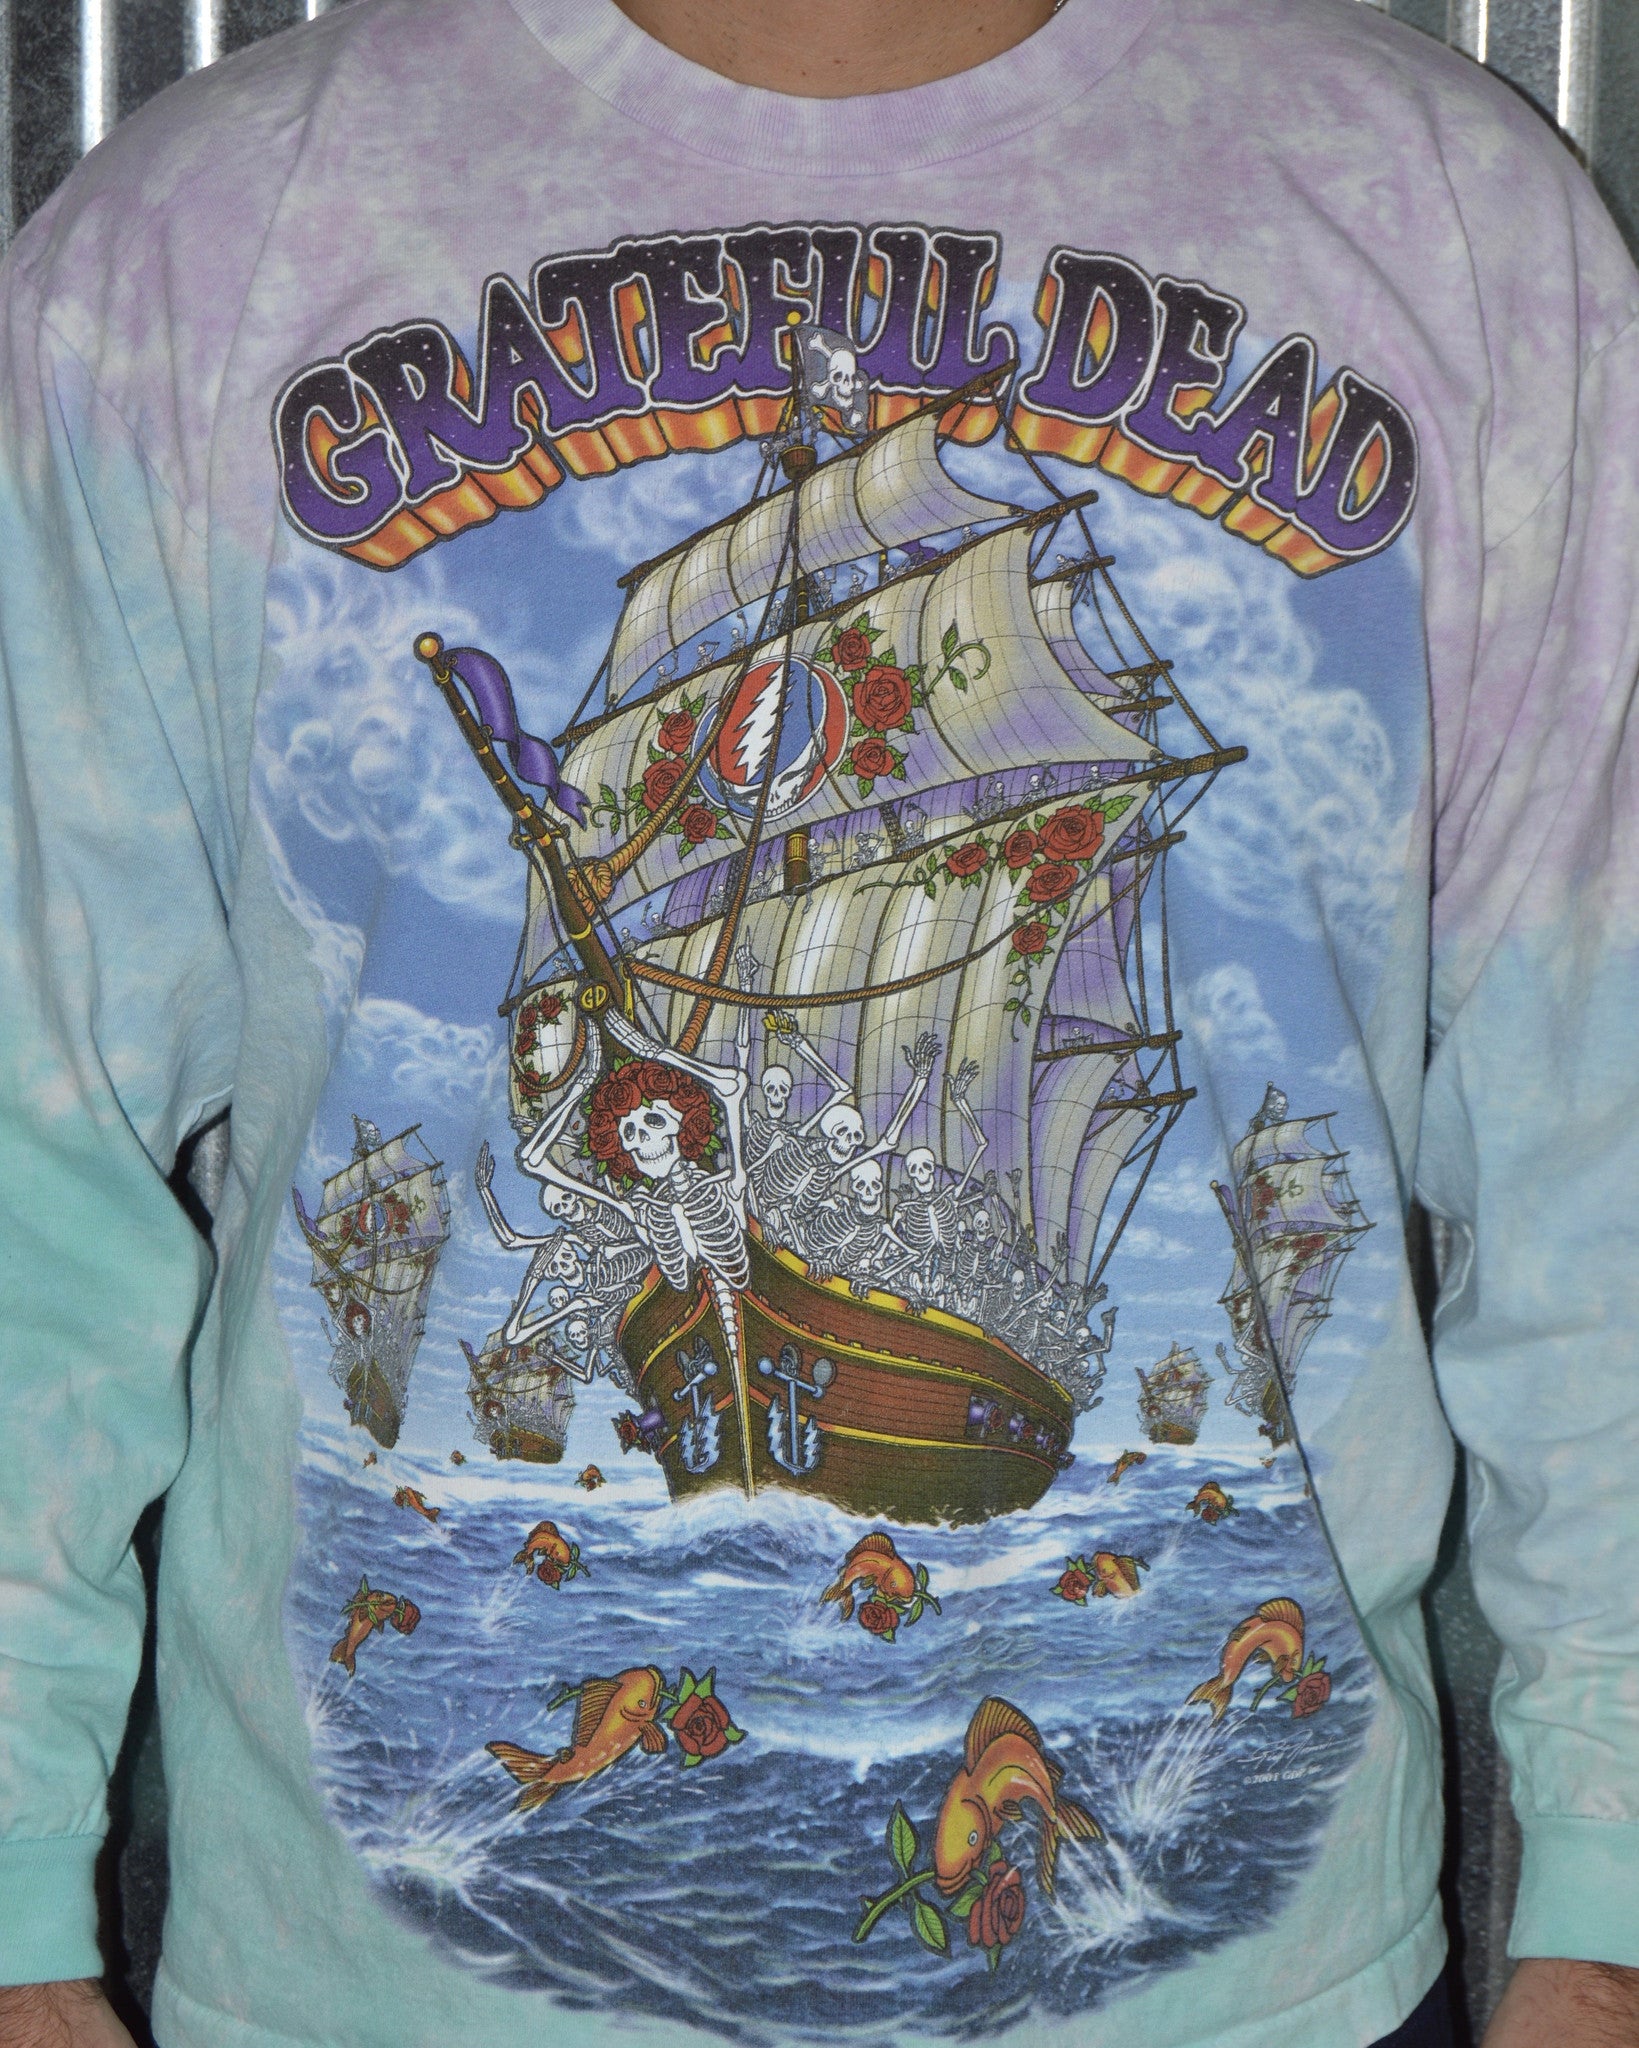 Vintage Grateful Dead Ship of Fools Tie Dye Band T-Shirt sz L